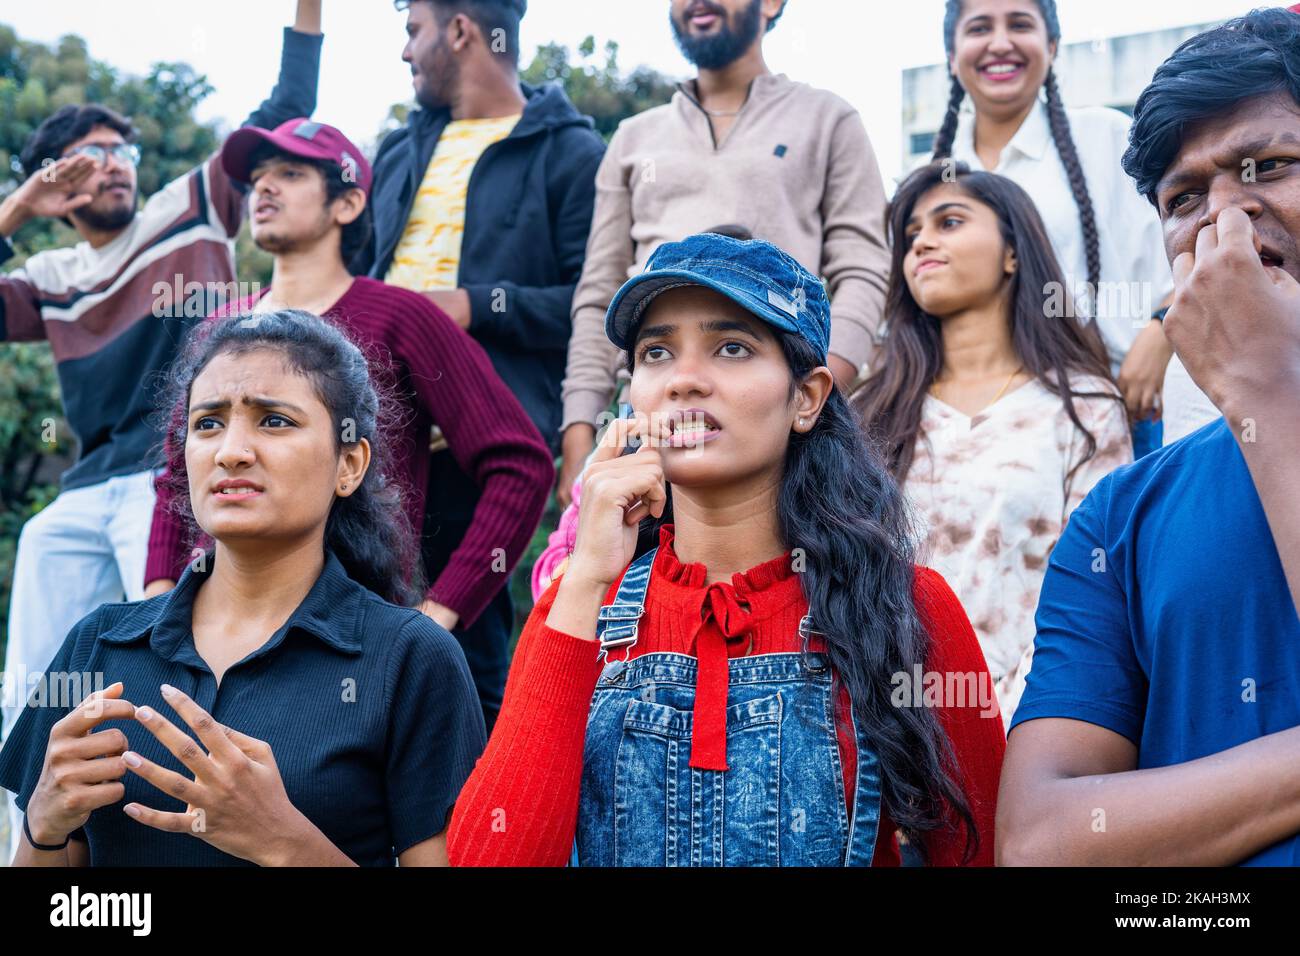 Un public tensionné et sérieux regardant le match de cricket au stade en mordant les ongles - concept de tournoi, de championnat et d'espoir Banque D'Images